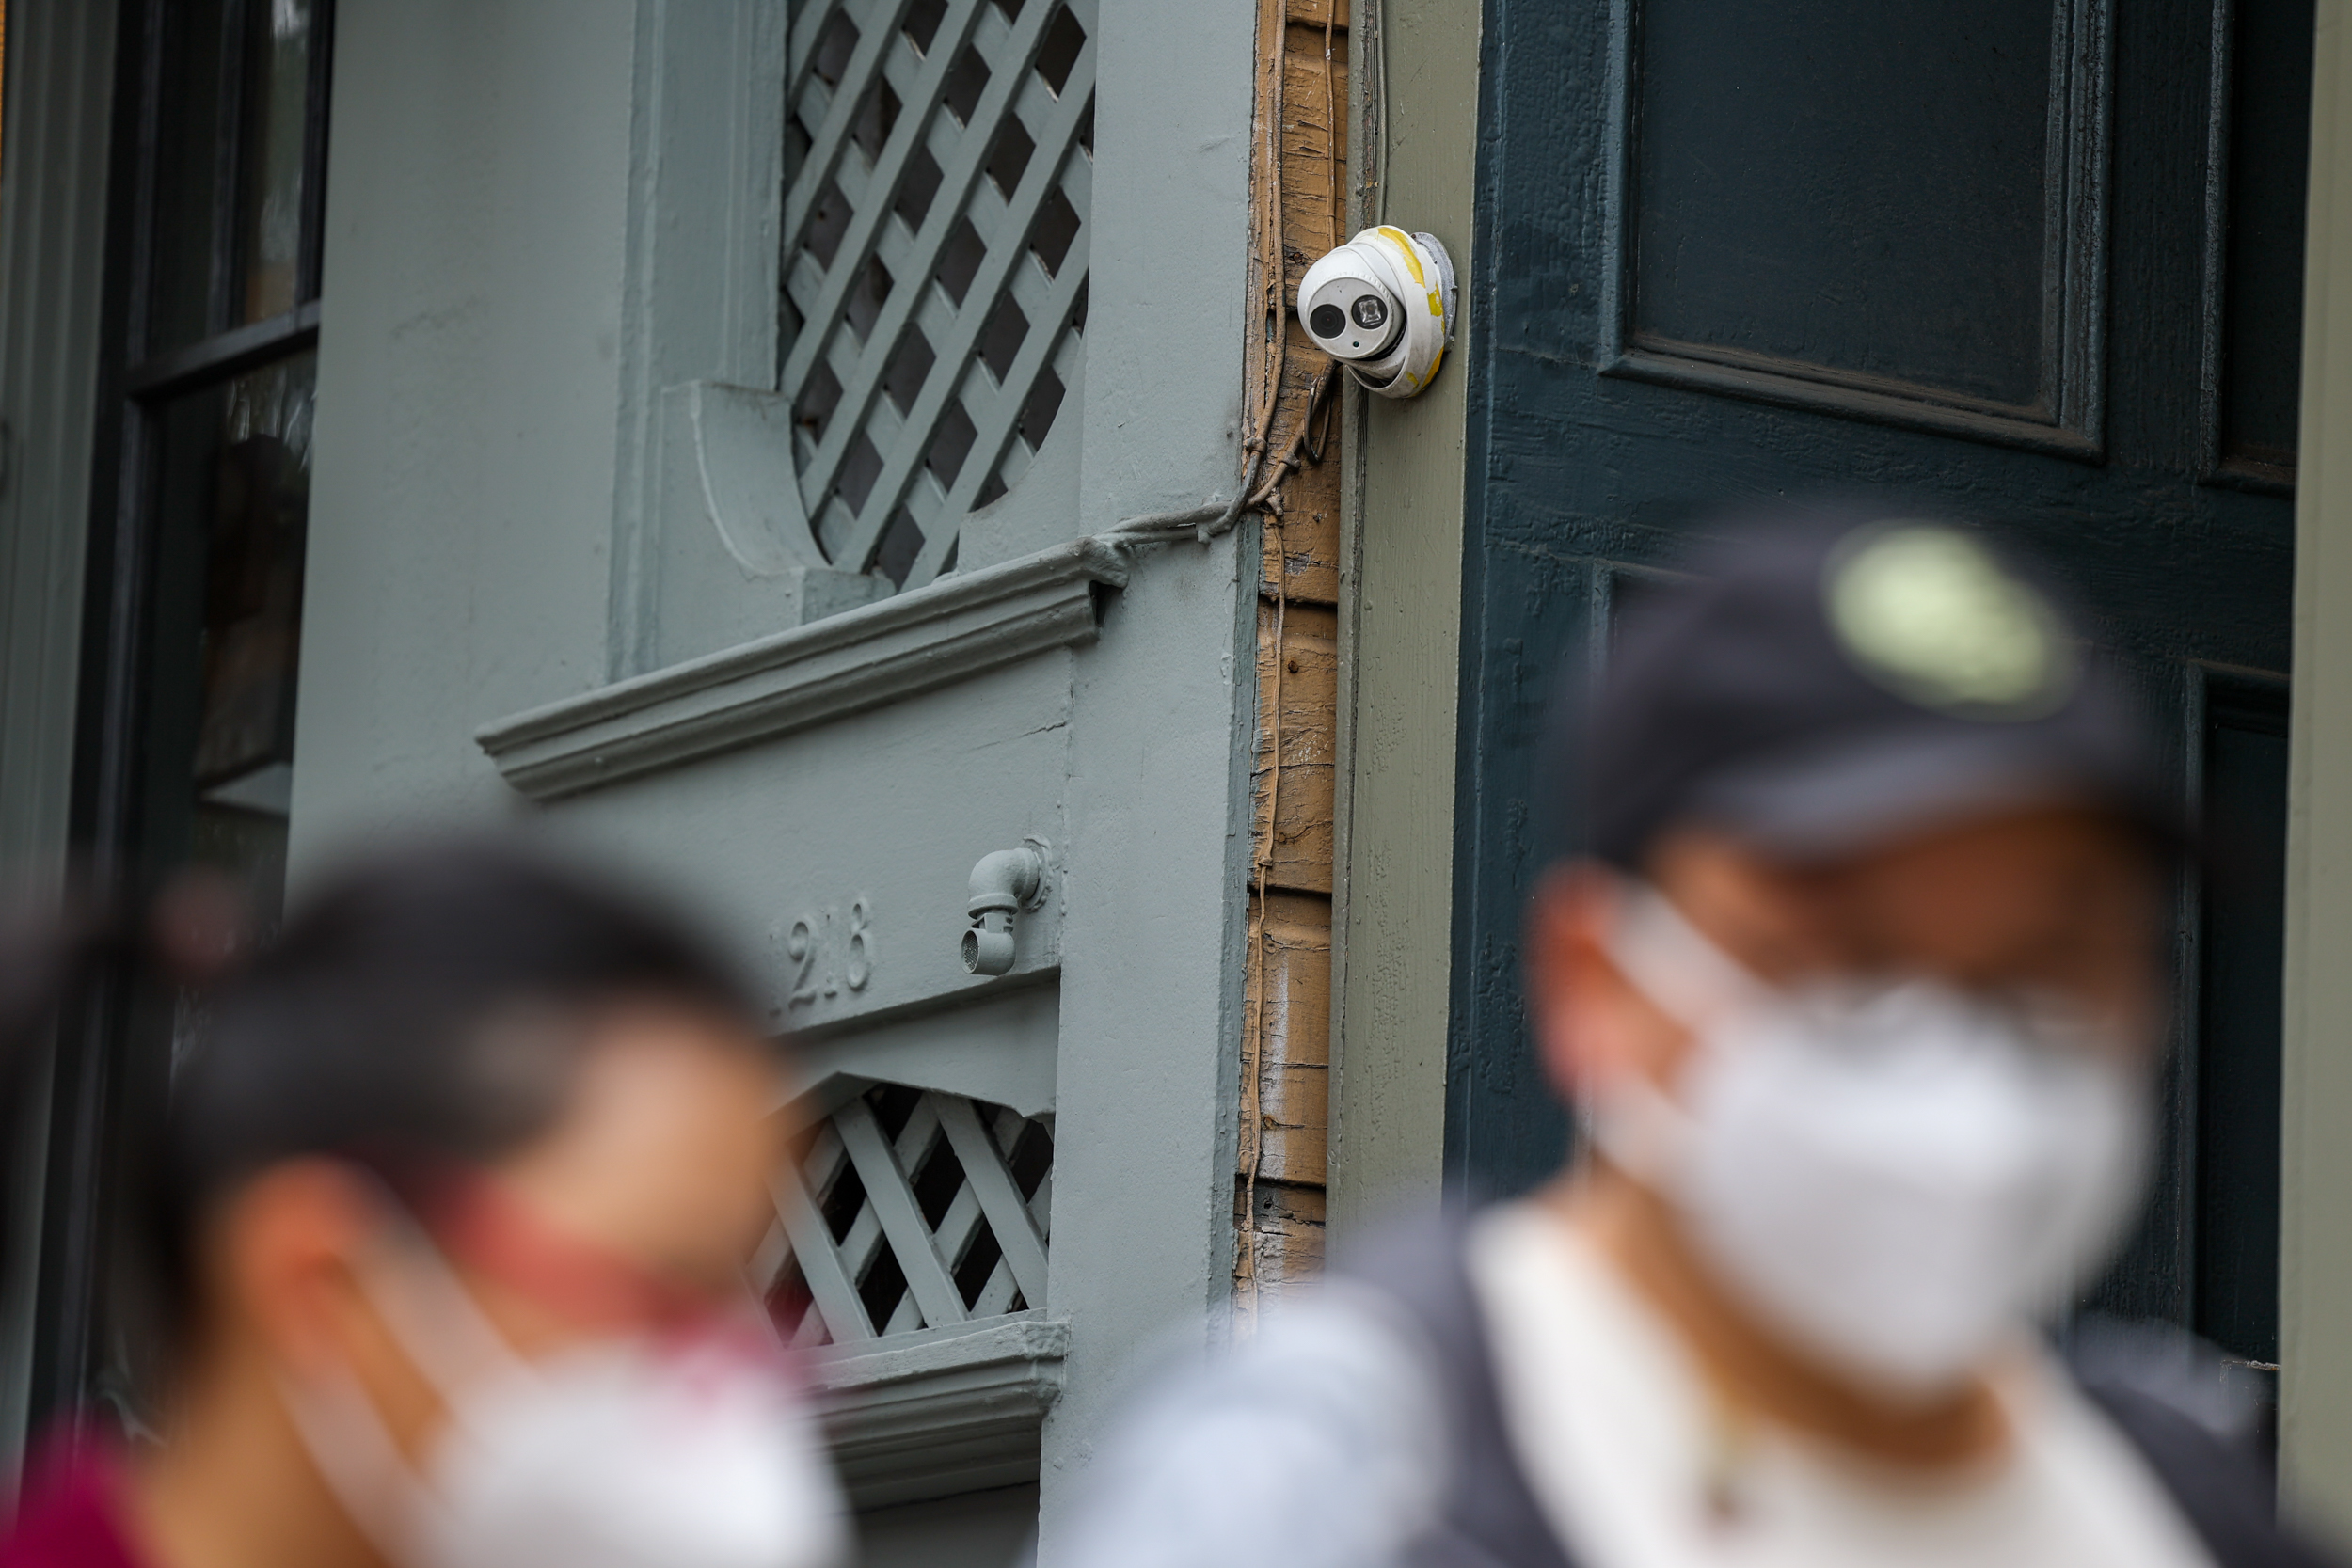 暴力襲擊視頻瘋傳 華人社區支持加裝監控攝像